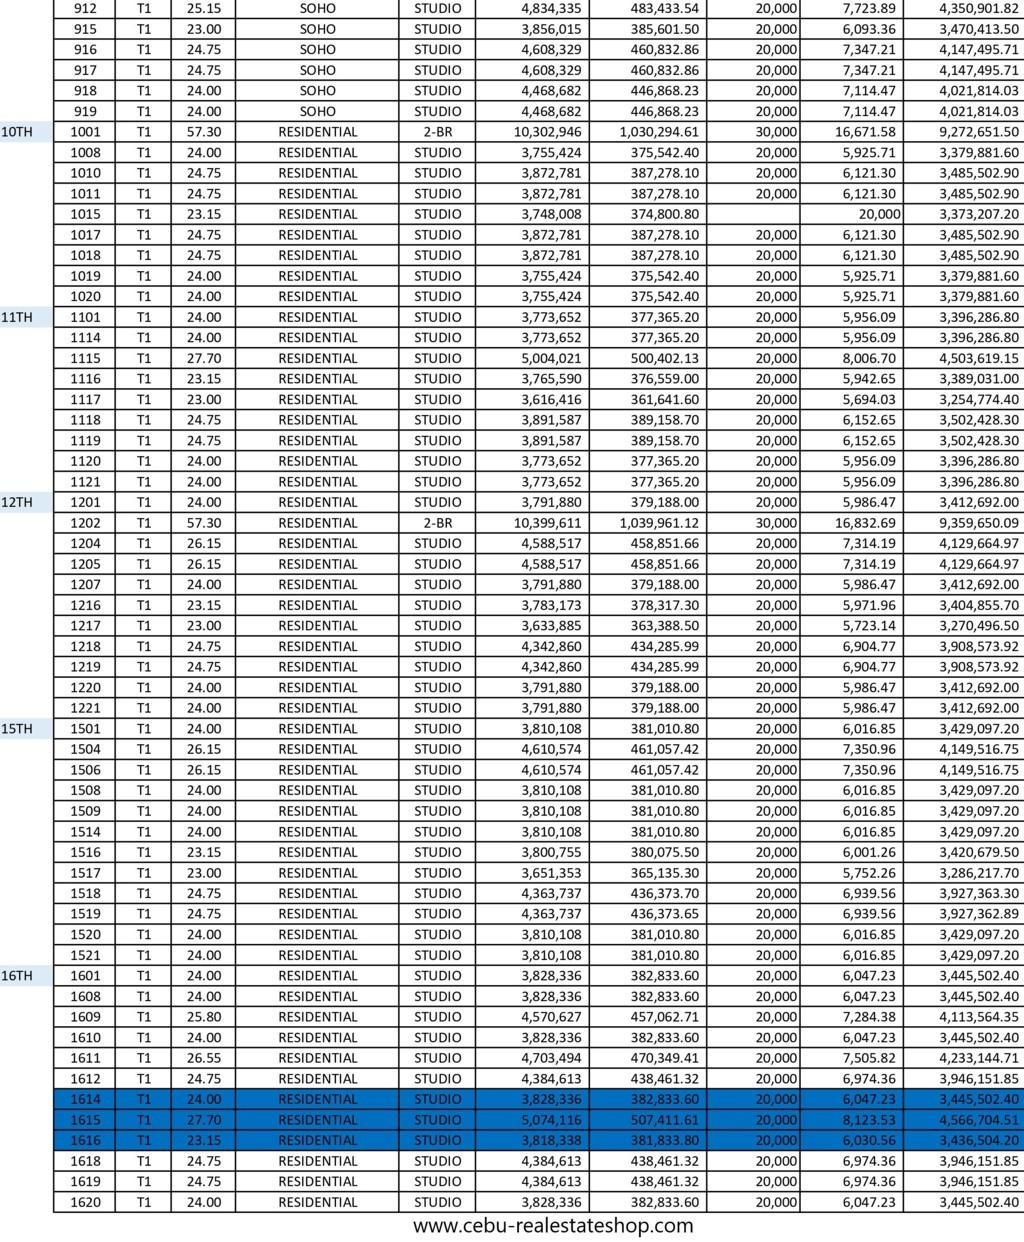 vertex coast price list 1